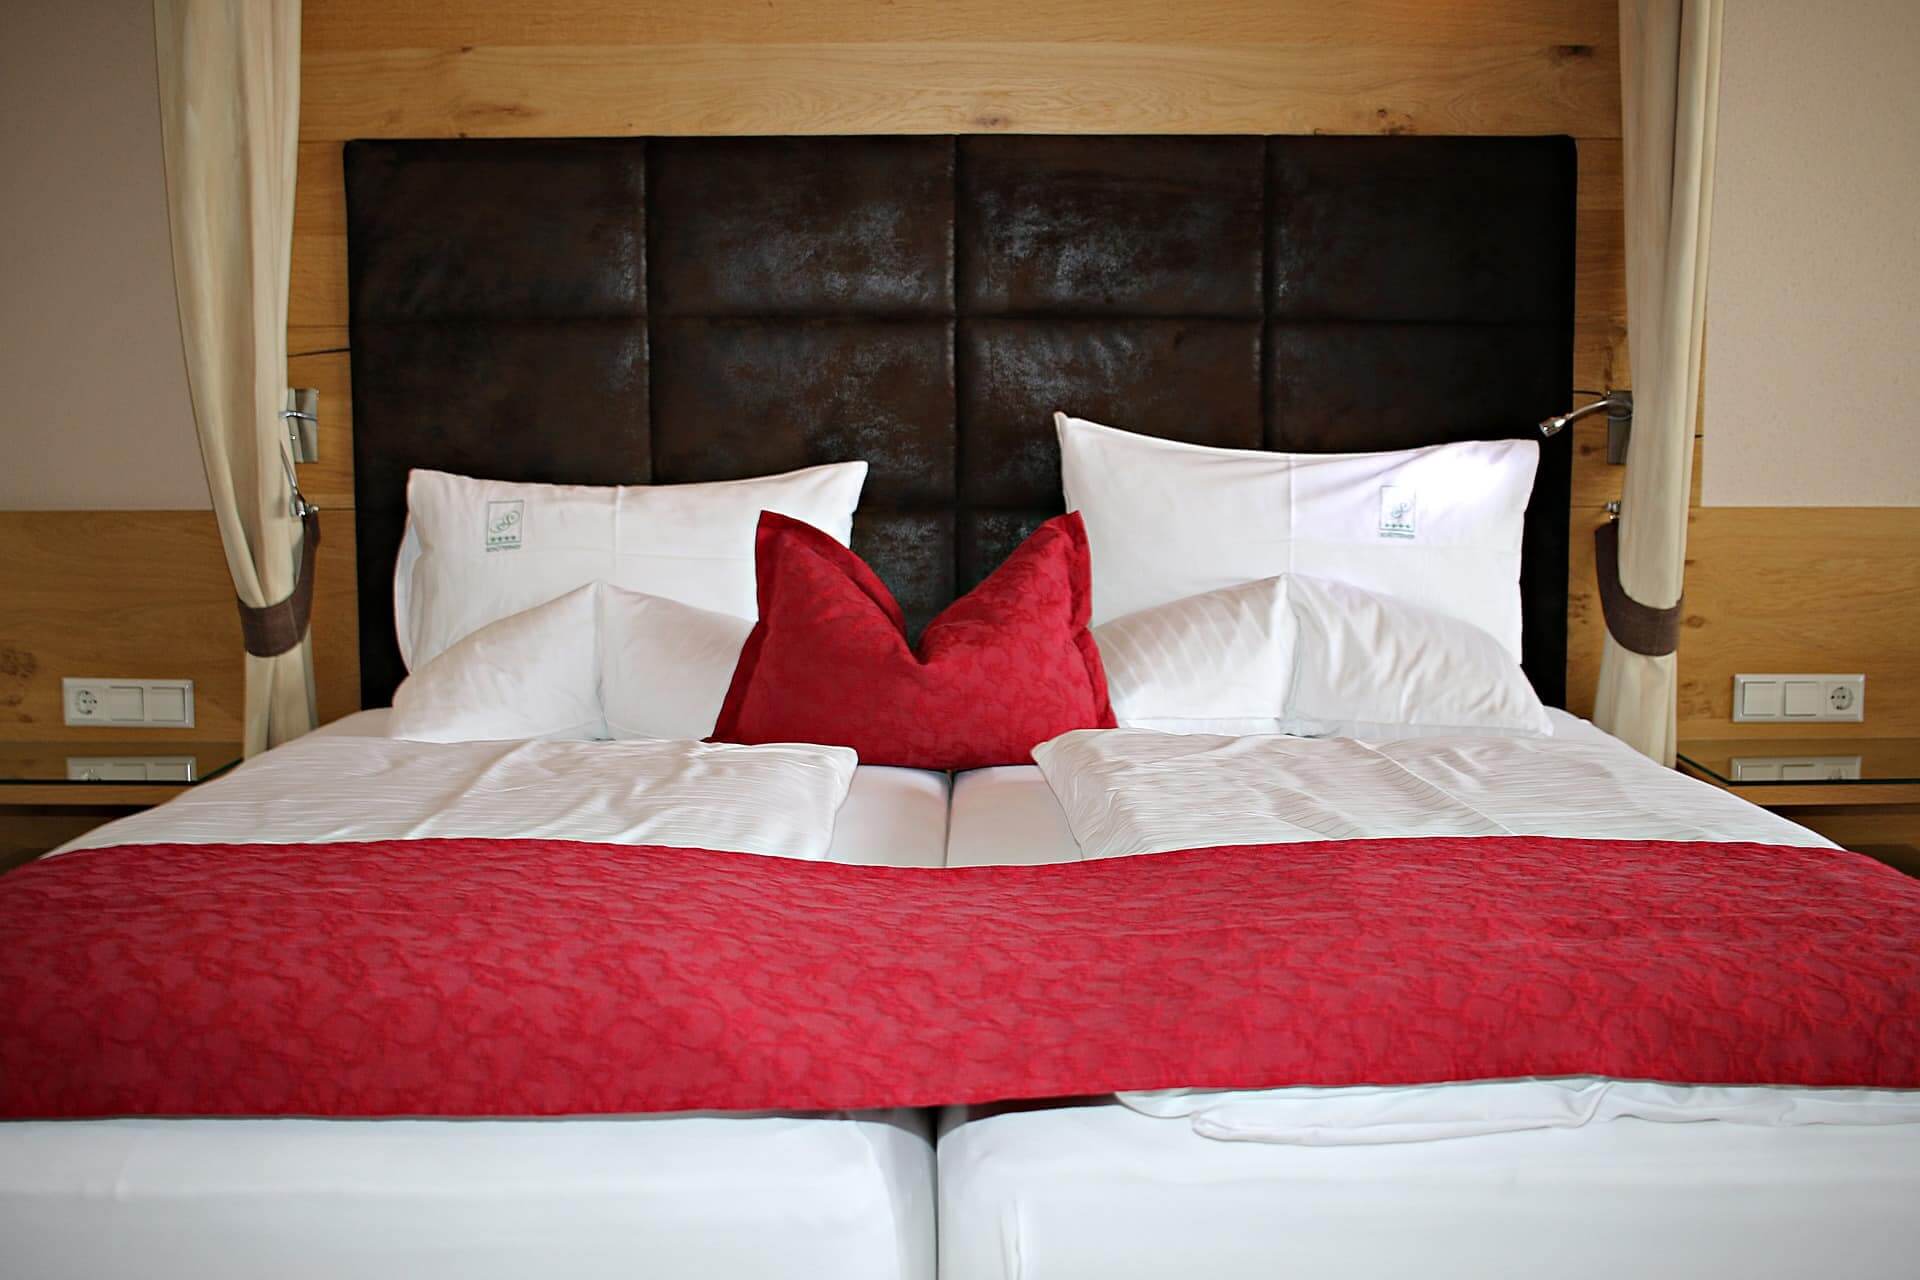 Ein Bett in einem Hotel mit 2 Matratzen